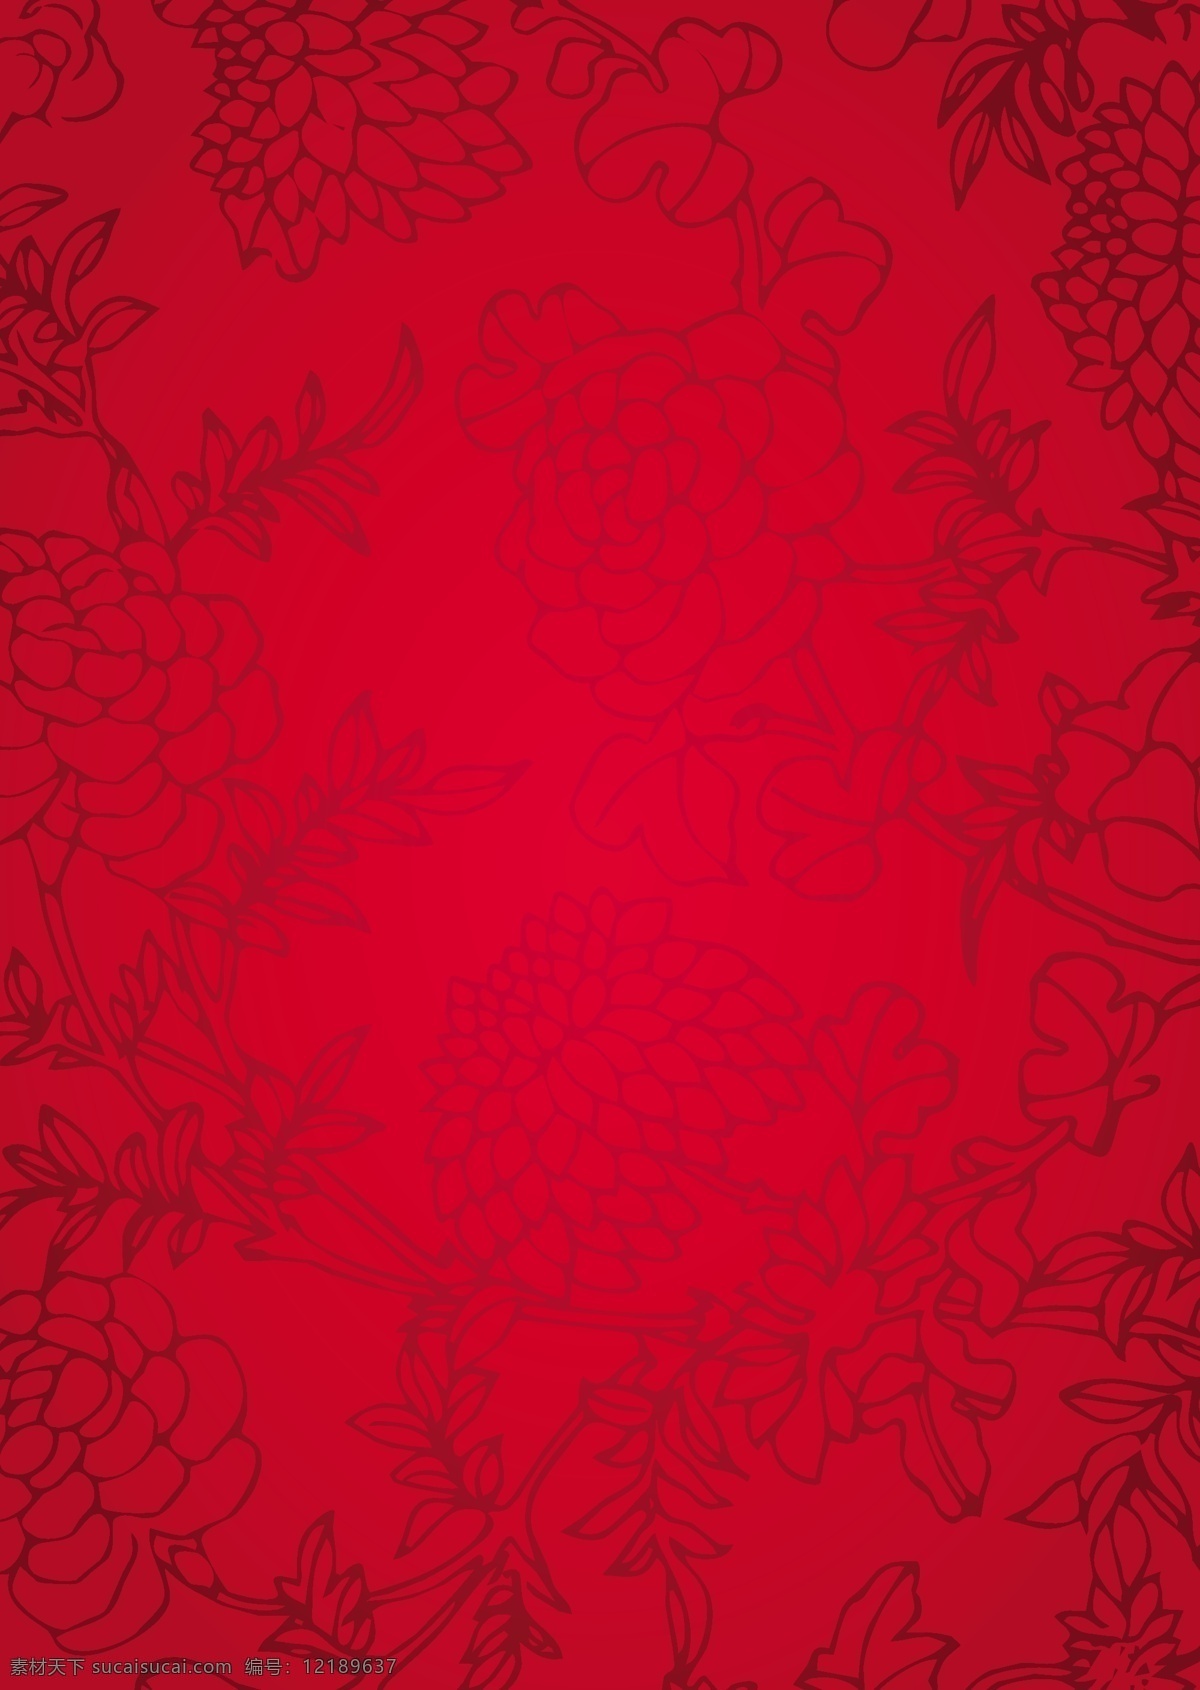 花 案 中国 传统 纹理 背景 矢量 花纹 红色 简约 卡通 设计素材 平面素材